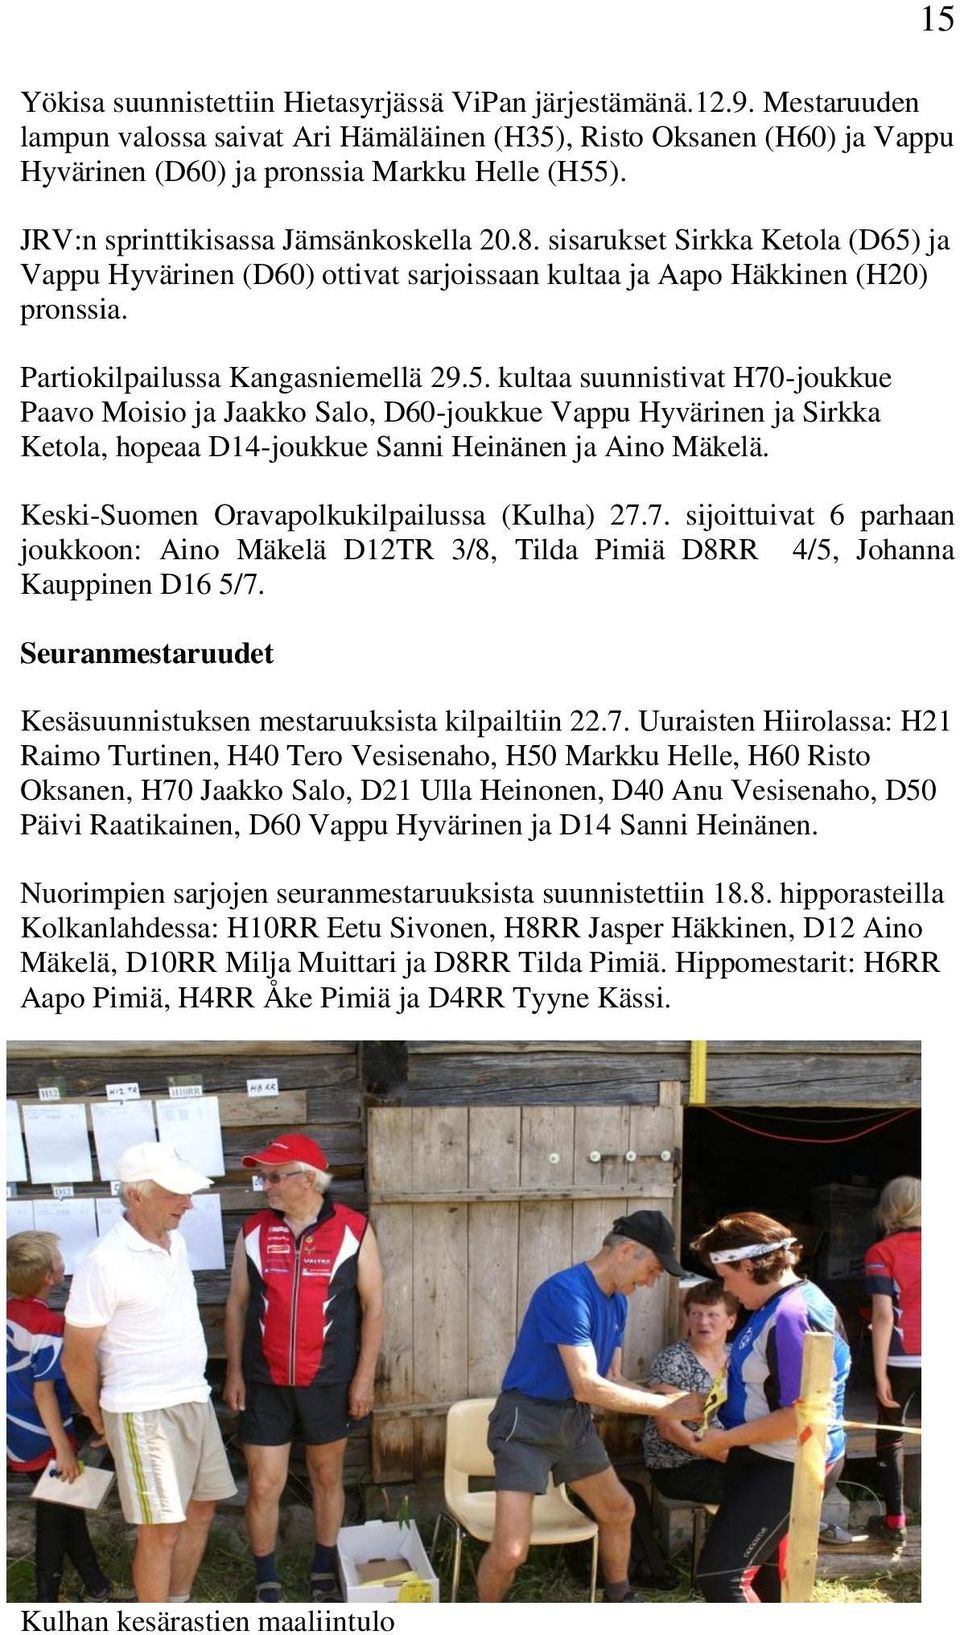 ja Vappu Hyvärinen (D60) ottivat sarjoissaan kultaa ja Aapo Häkkinen (H20) pronssia. Partiokilpailussa Kangasniemellä 29.5.